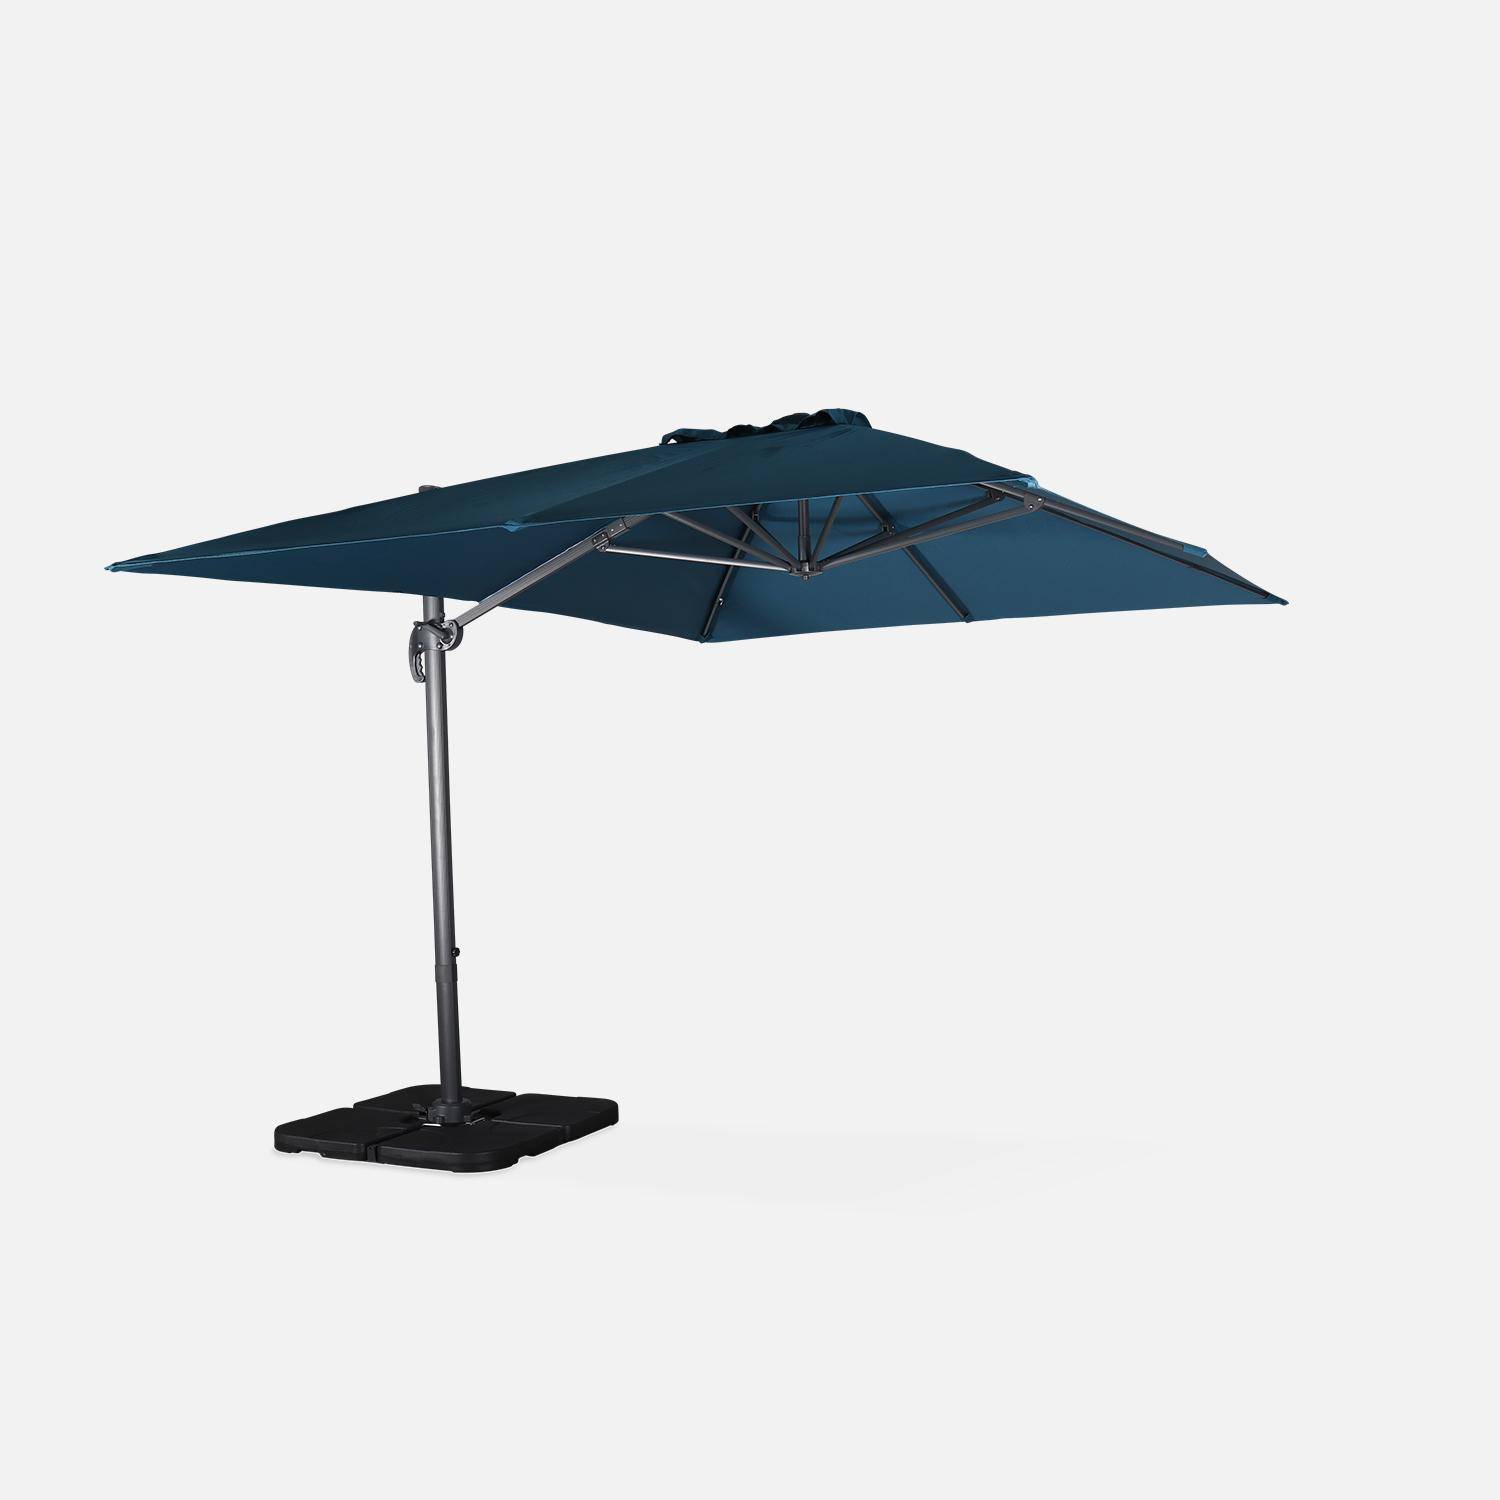 Eend blauwe rechthoekige parasol 3x4m + verzwaarde tegels 50x50cm Photo3